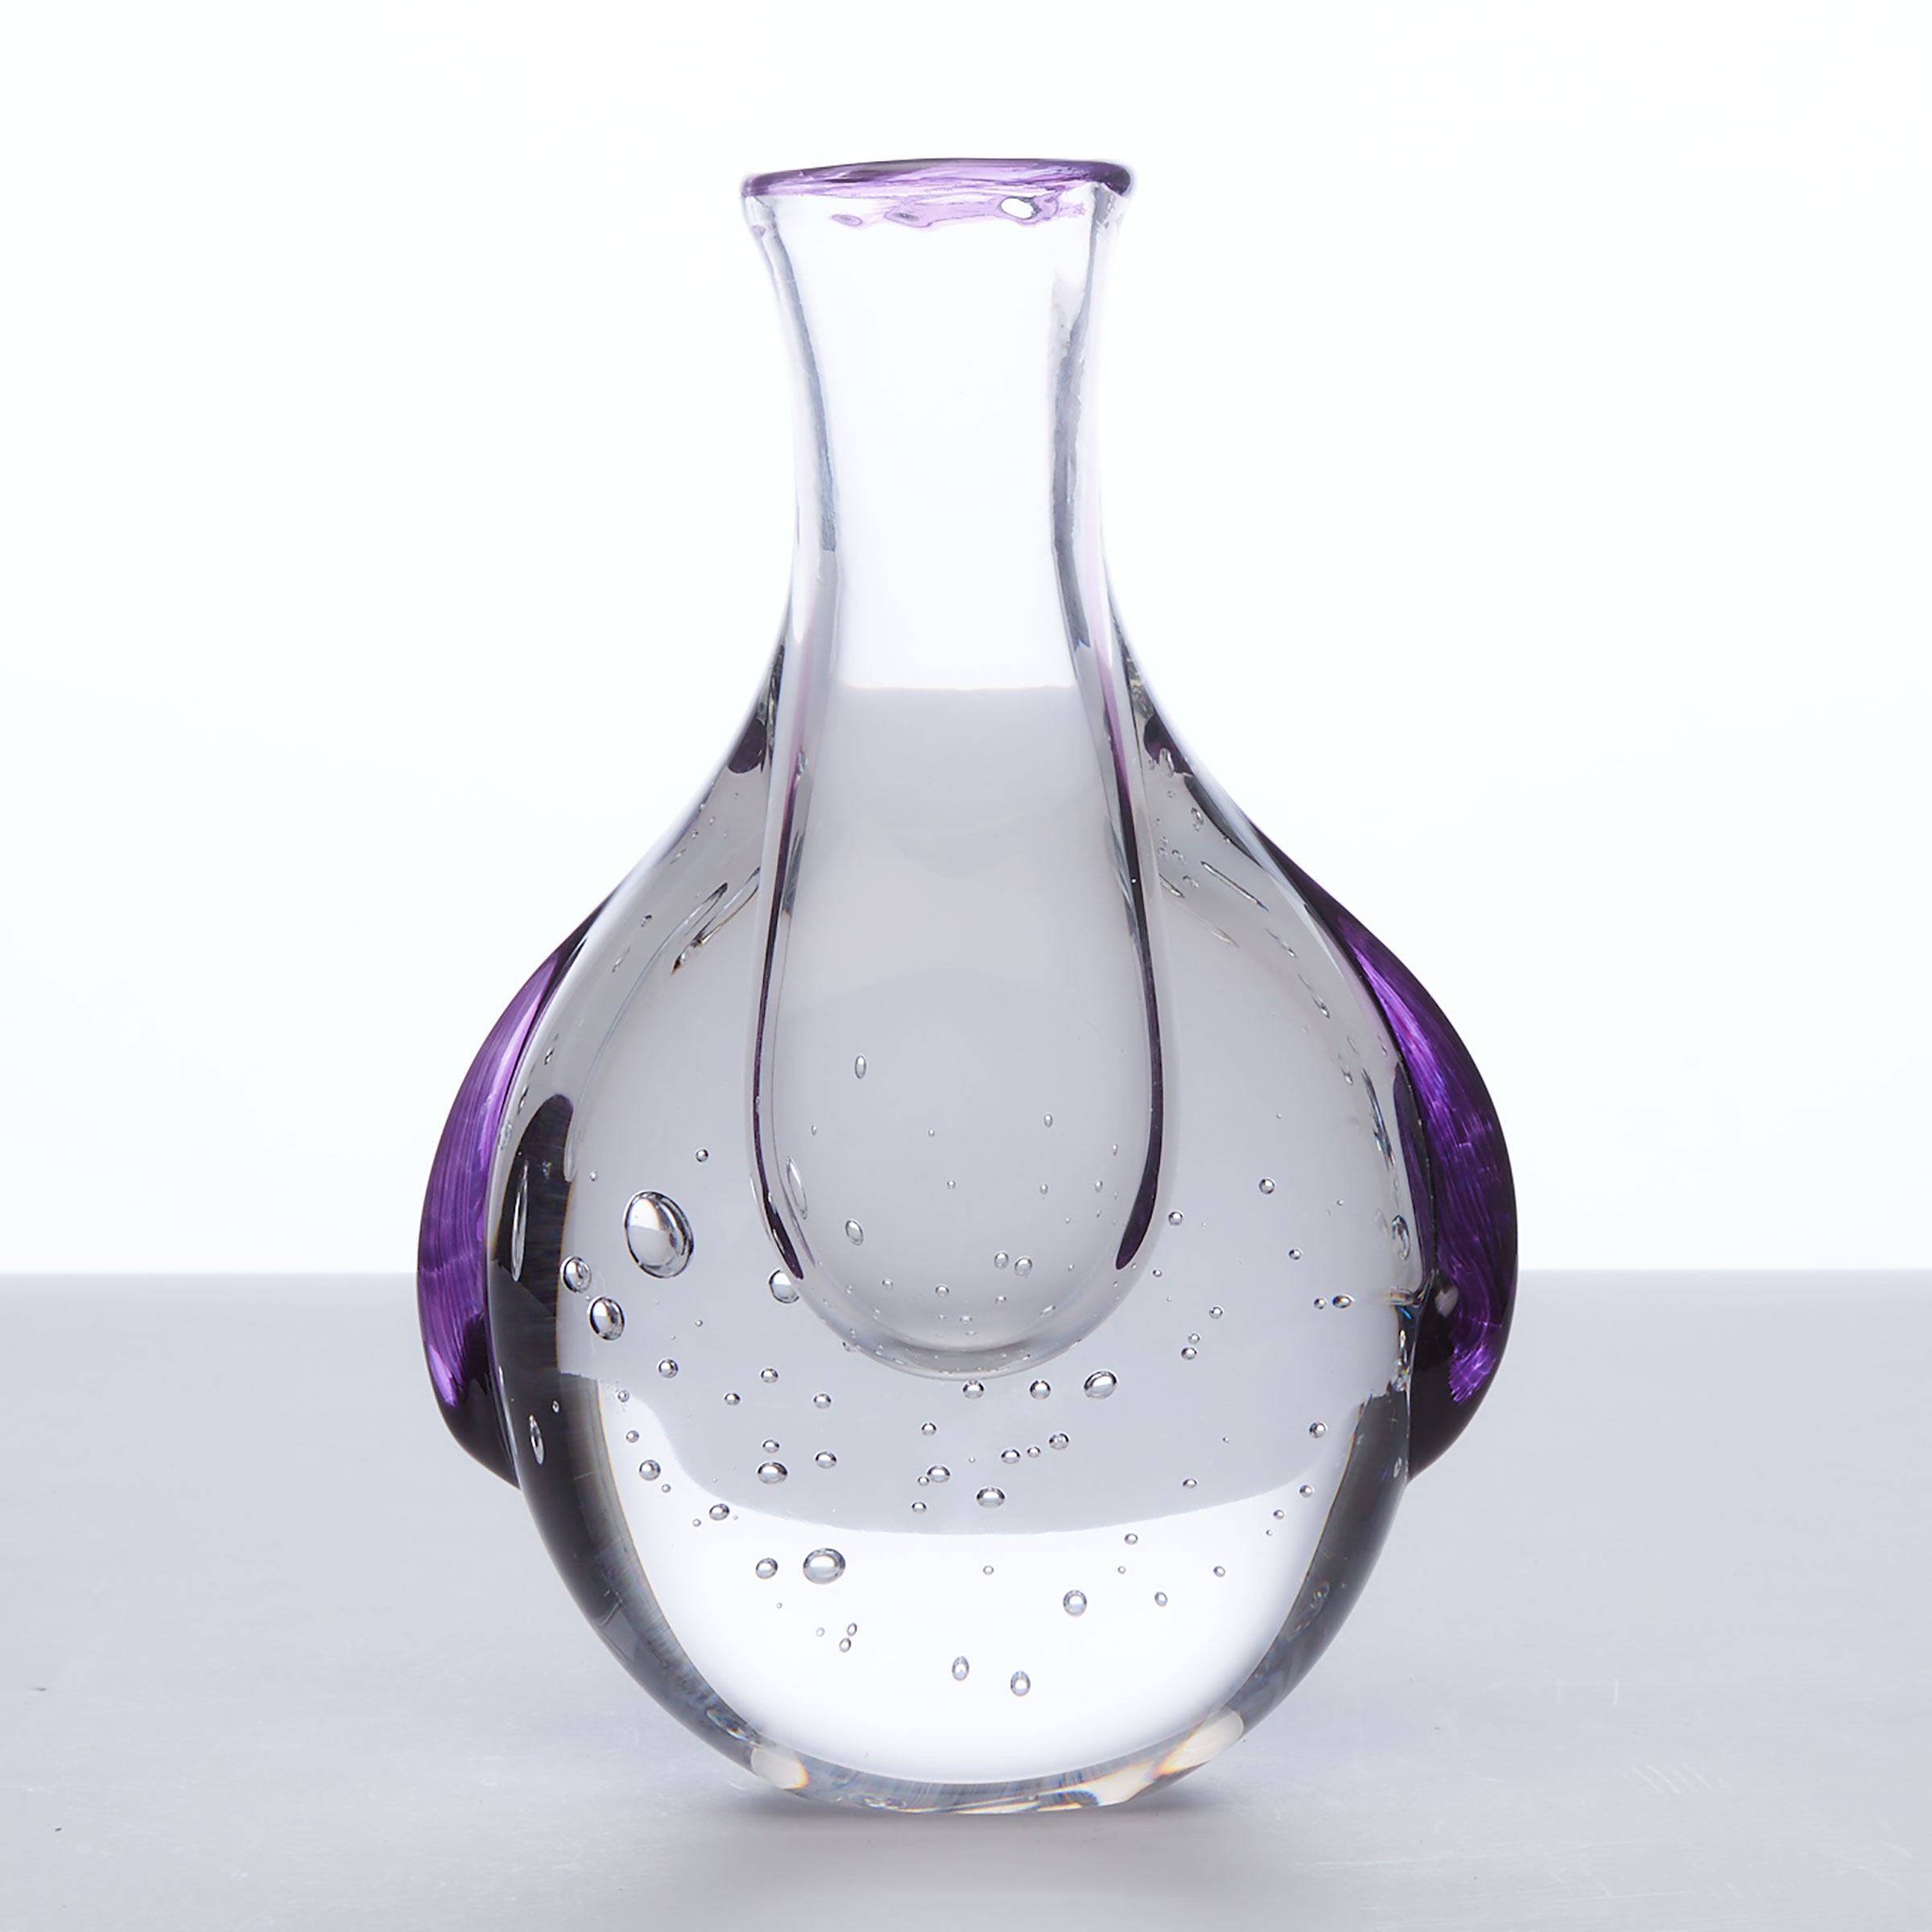 Toan Klein Glass Vase, 2010